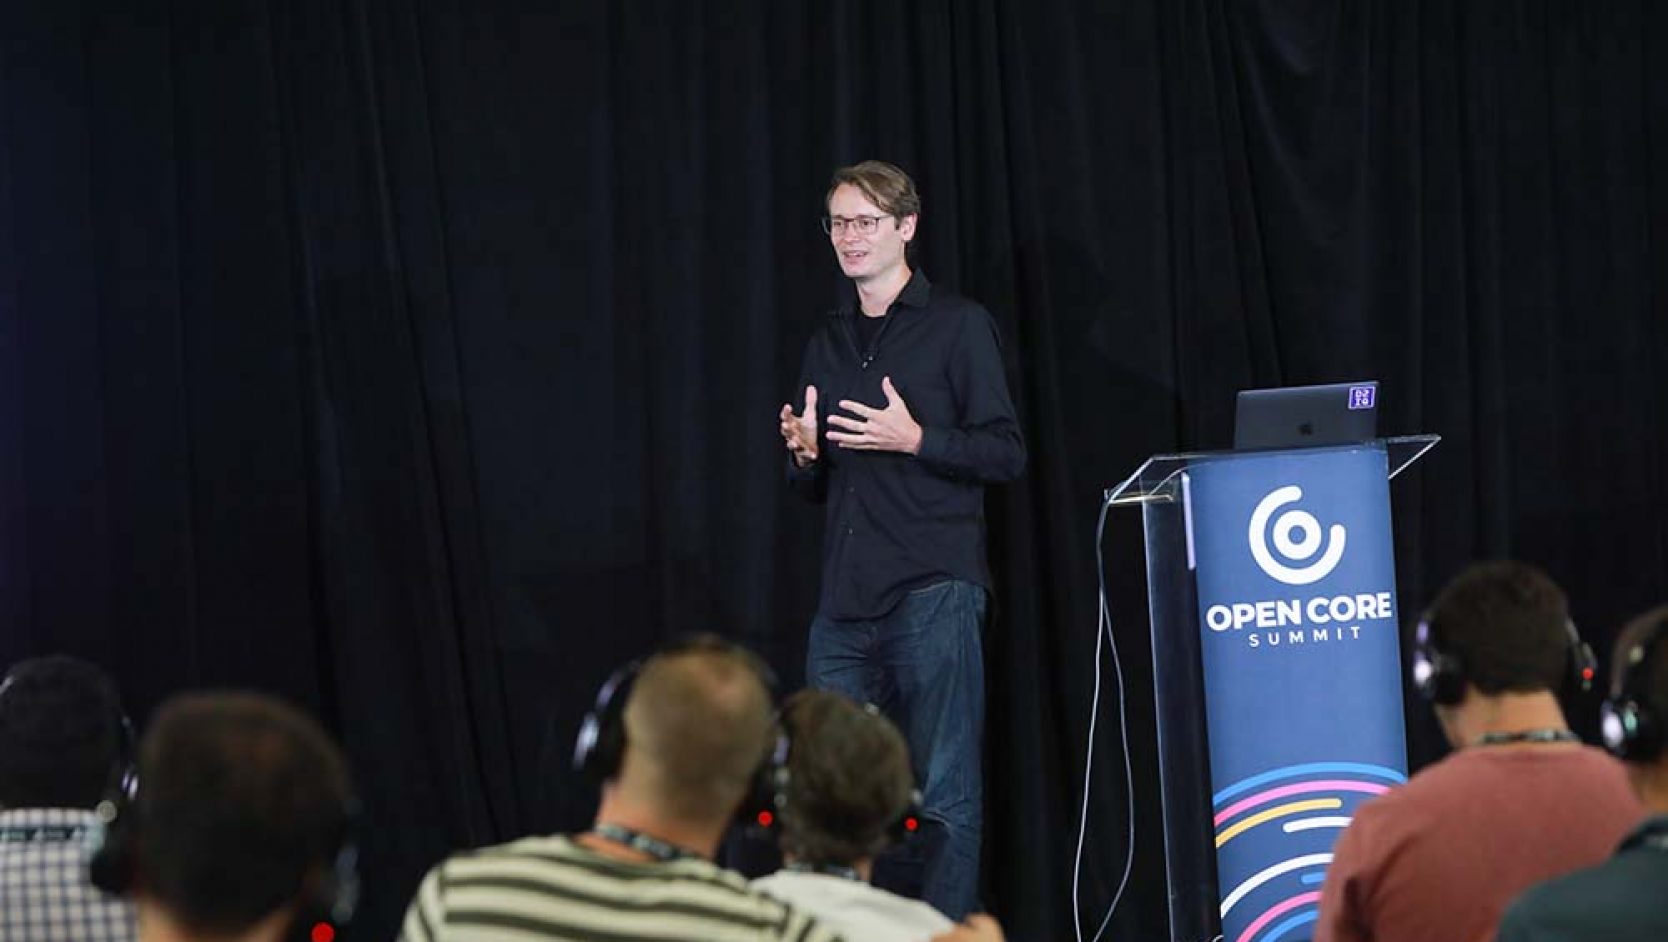 2019 fand in San Francisco die erste jährliche Konferenz für die kommerzielle Nutzung von Open-Source-Software statt. Als ausgewiesener Experte hielt TUM Alumnus Tobias Knaup einen Vortrag auf der Eröffnungsveranstaltung des Open Core Summit